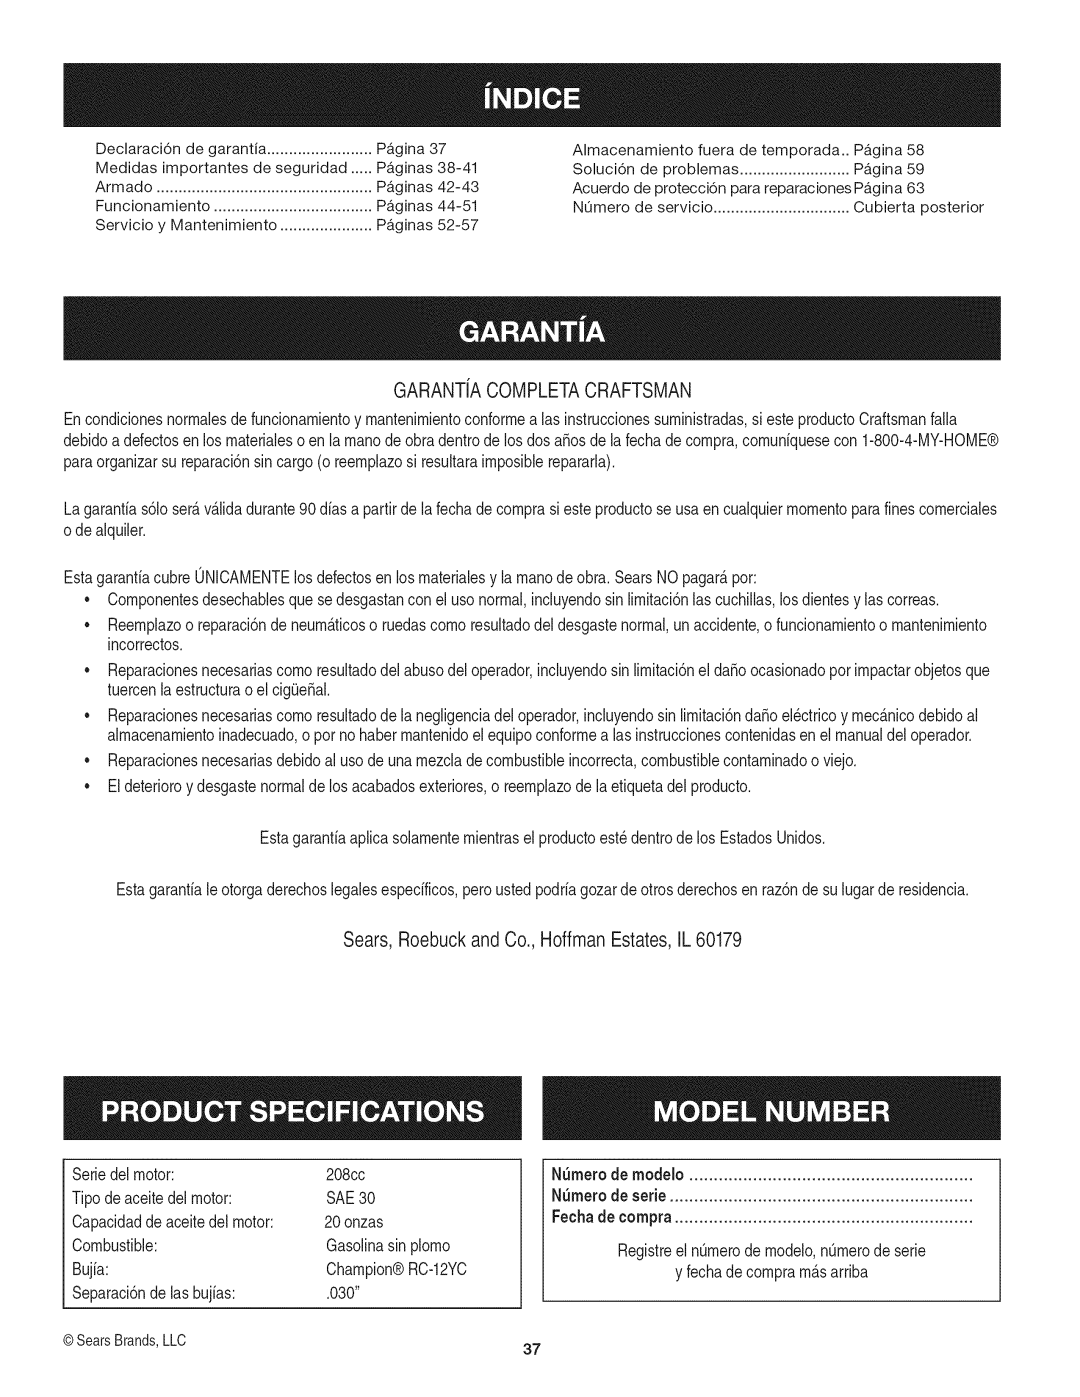 Craftsman 247.29931 manual Garantia Completacraftsman, Sears, Roebuck and Co., Hoffman Estates, IL 